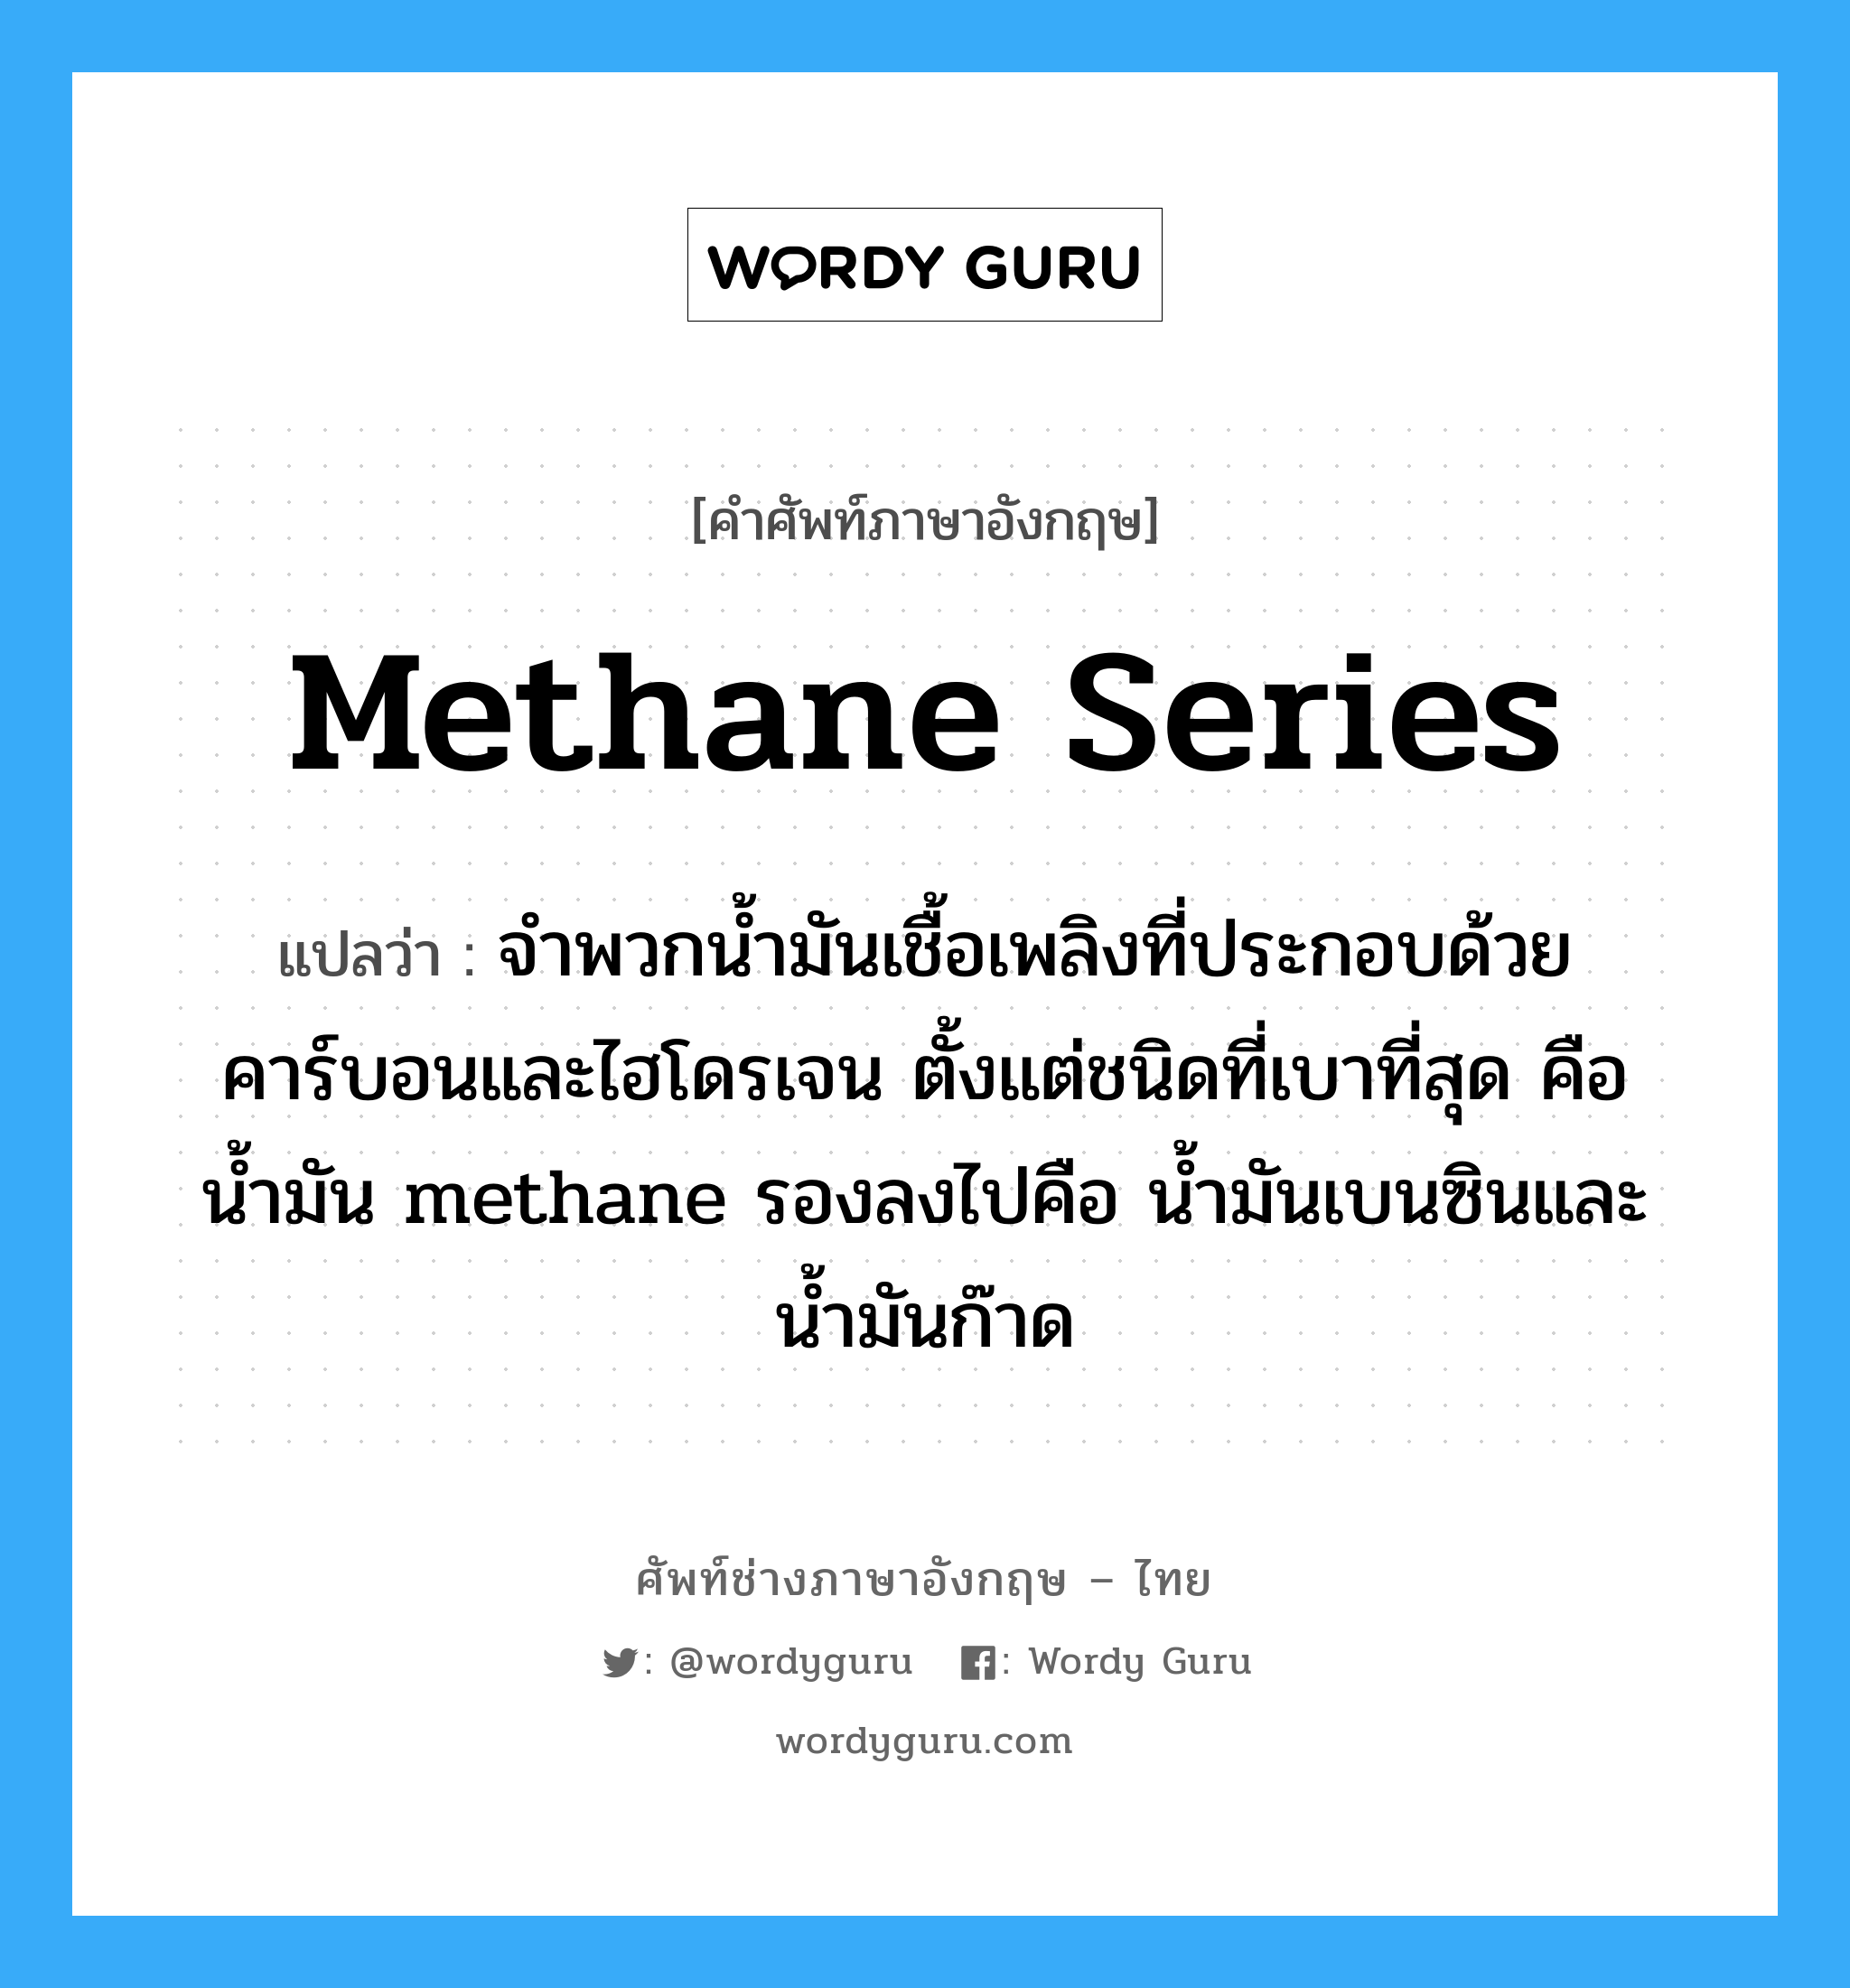 methane series แปลว่า?, คำศัพท์ช่างภาษาอังกฤษ - ไทย methane series คำศัพท์ภาษาอังกฤษ methane series แปลว่า จำพวกน้ำมันเชื้อเพลิงที่ประกอบด้วยคาร์บอนและไฮโดรเจน ตั้งแต่ชนิดที่เบาที่สุด คือน้ำมัน methane รองลงไปคือ น้ำมันเบนซินและน้ำมันก๊าด